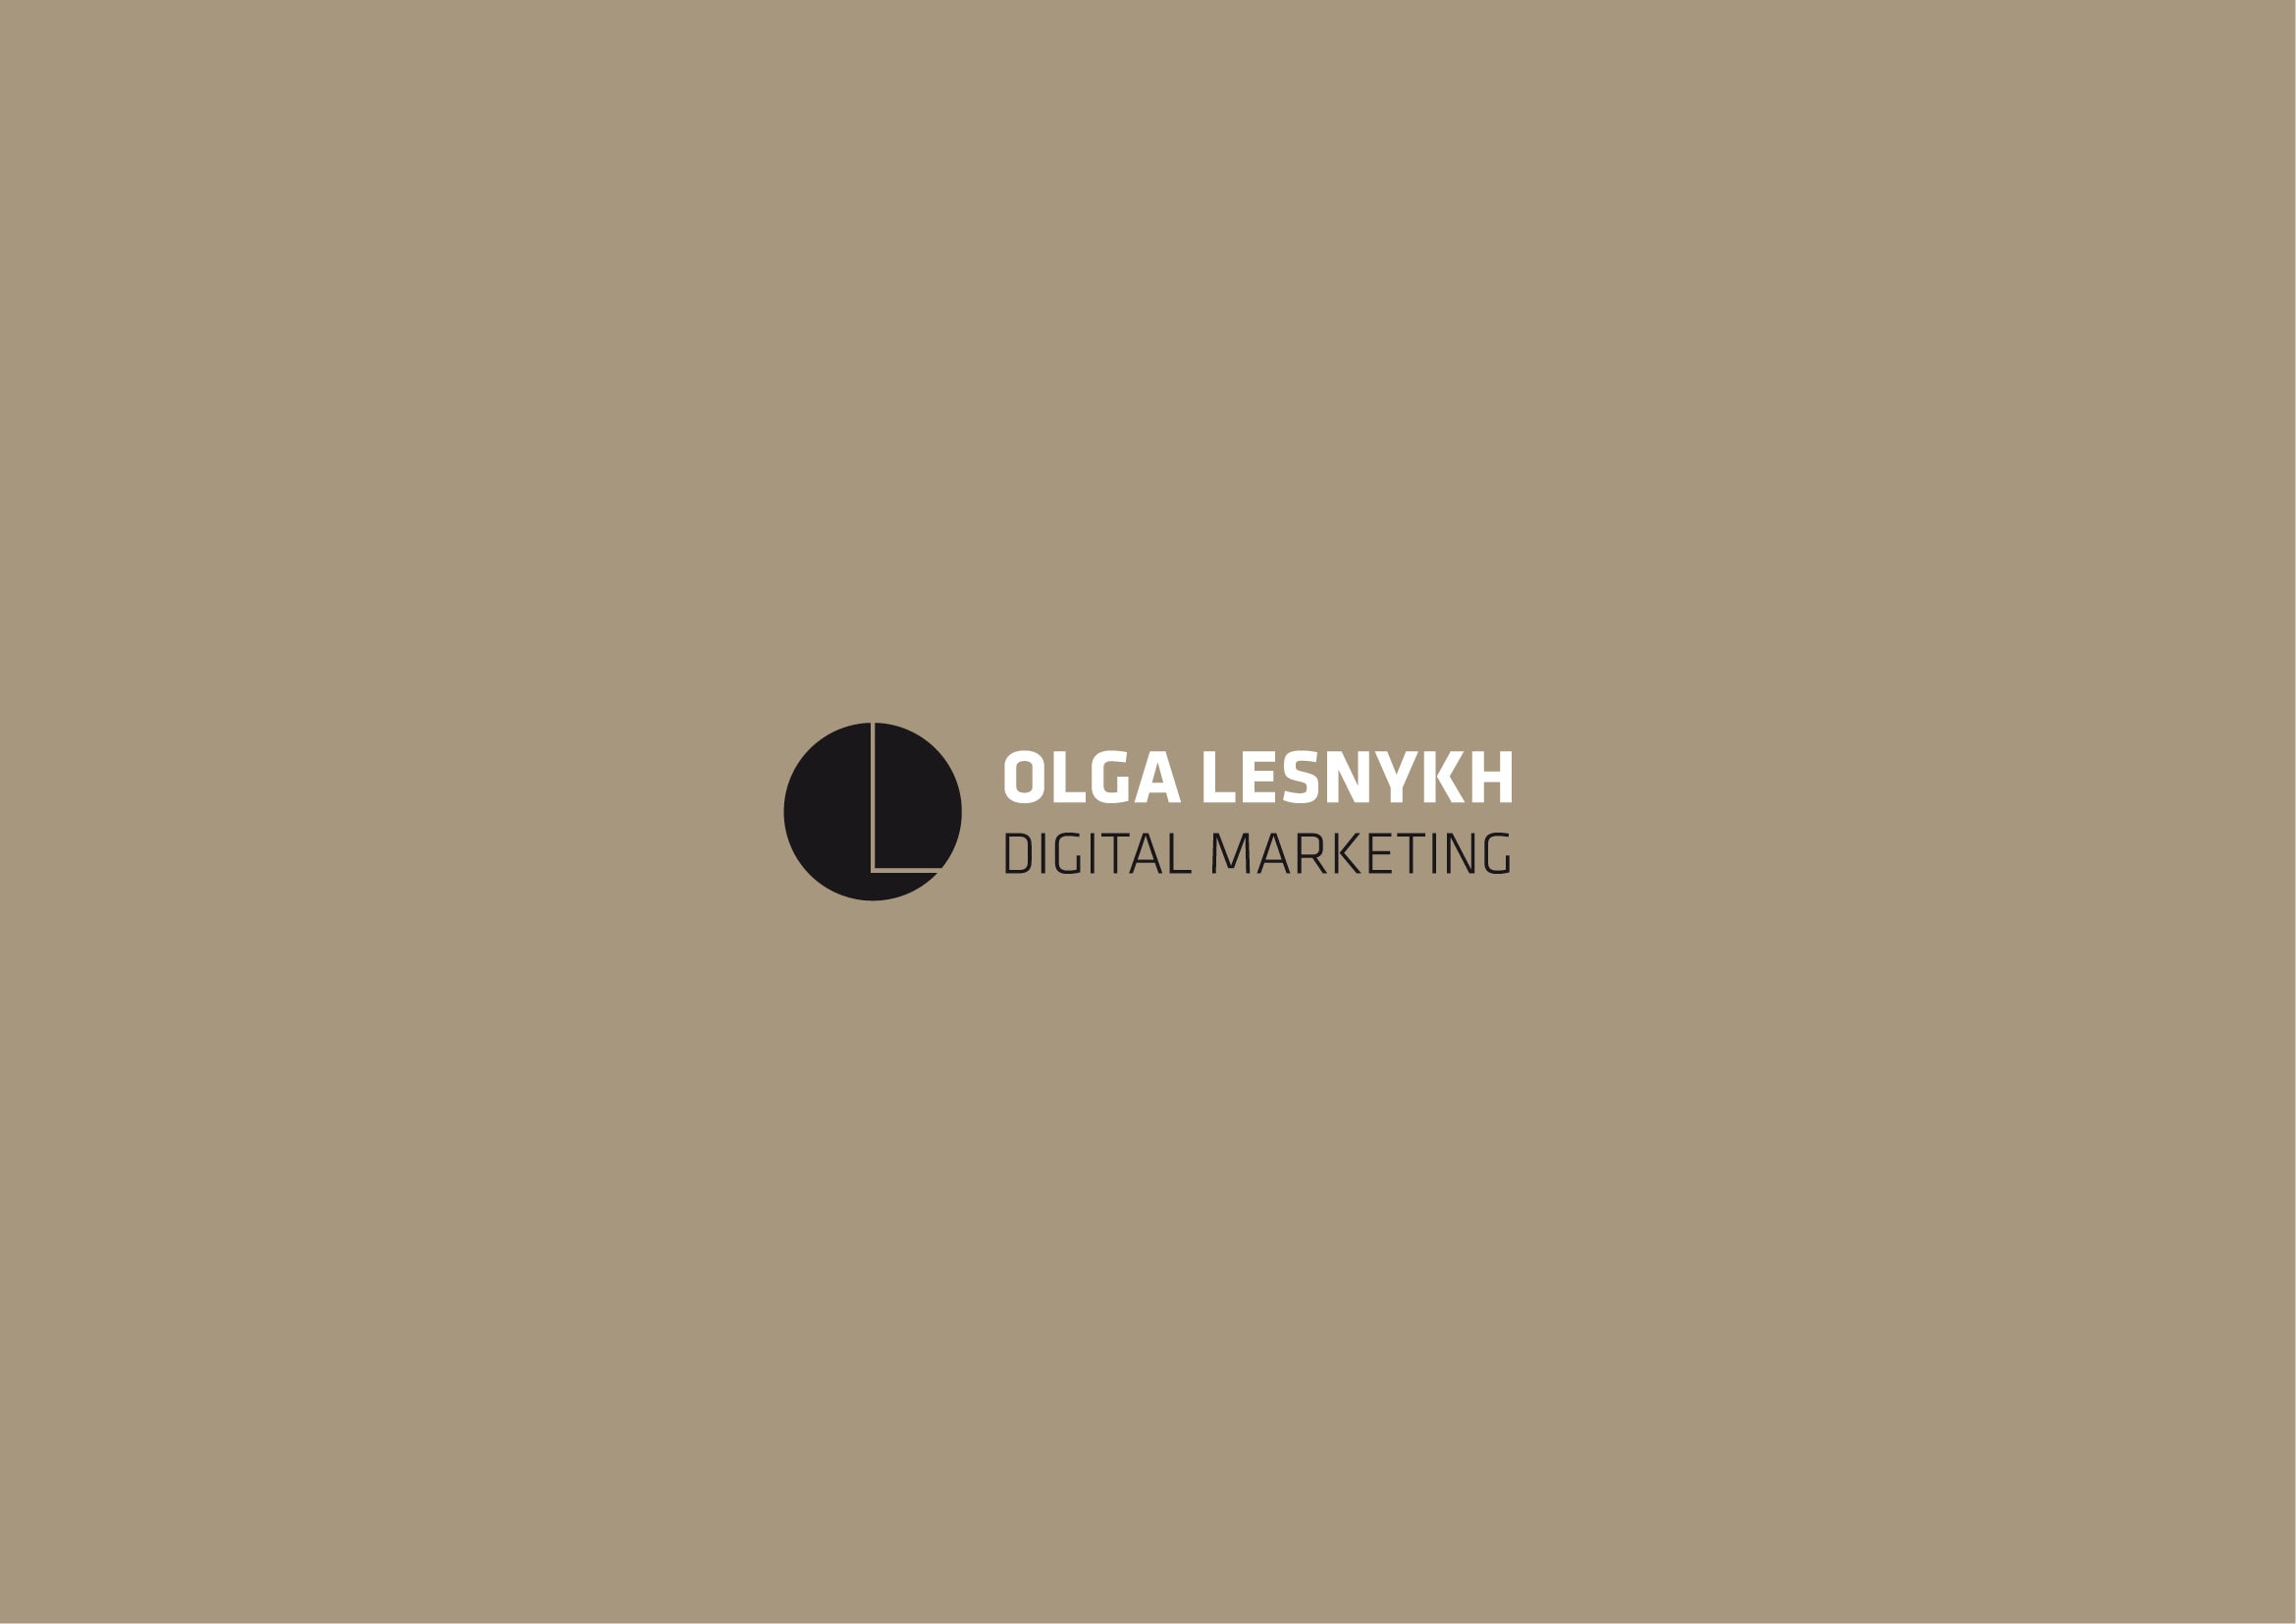 Homepage, Logo und Corporate Design Entwicklung für SEO Freelancer Olga Lesnykh Frankfurt durch Webdesigner Ronald Wissler